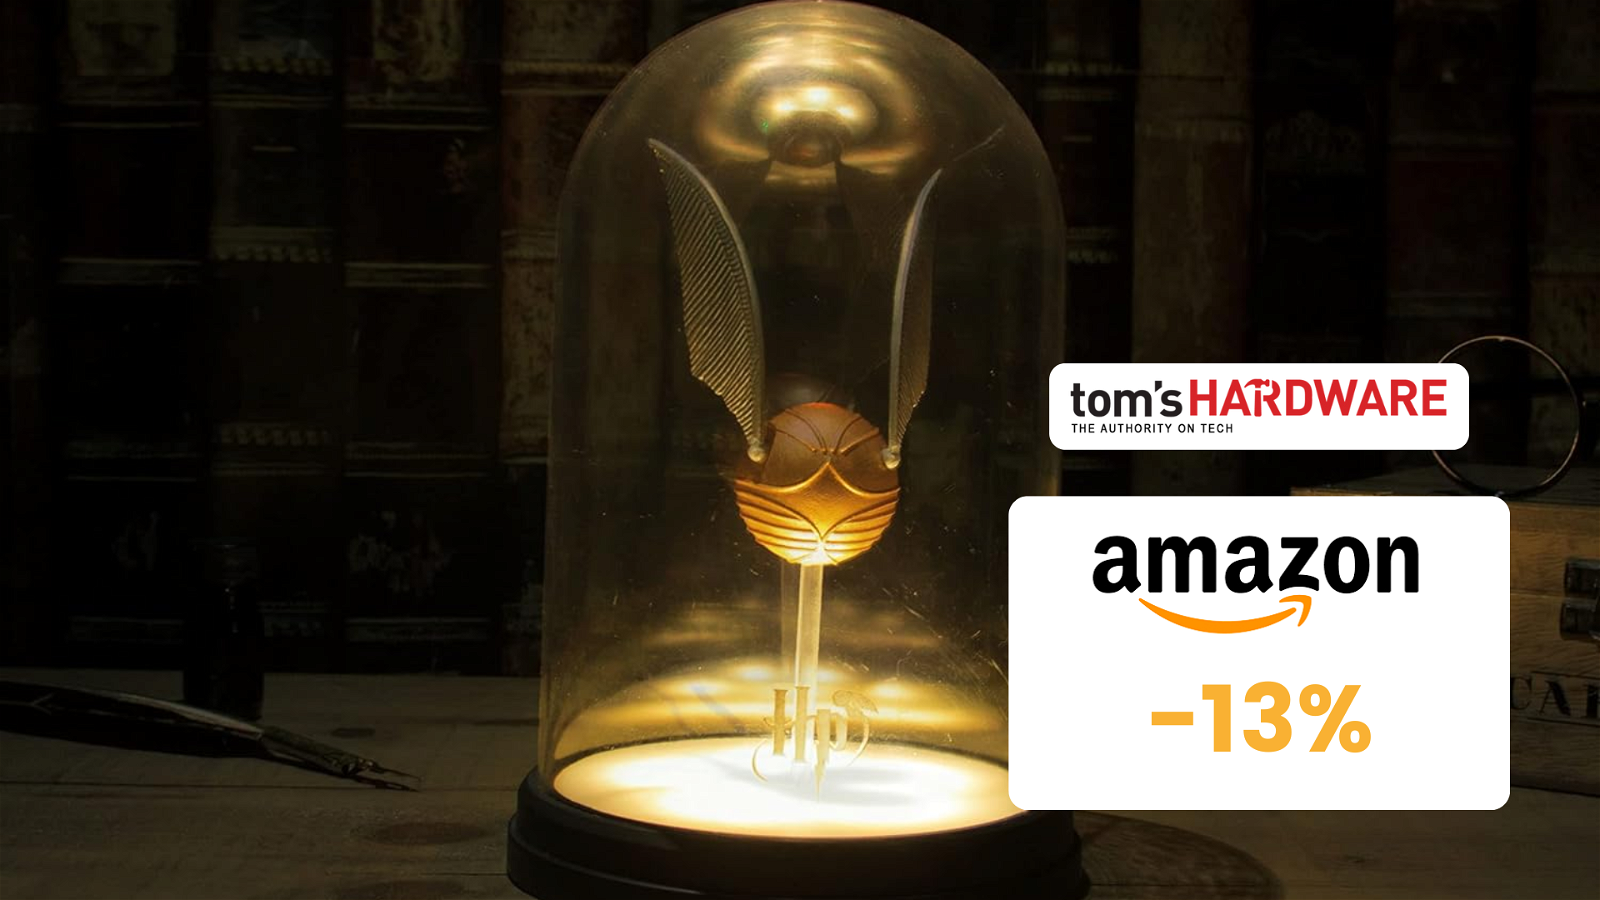 Immagine di BELLISSIMA lampada boccino d'oro di Harry Potter scontata su Amazon! Solo 25€